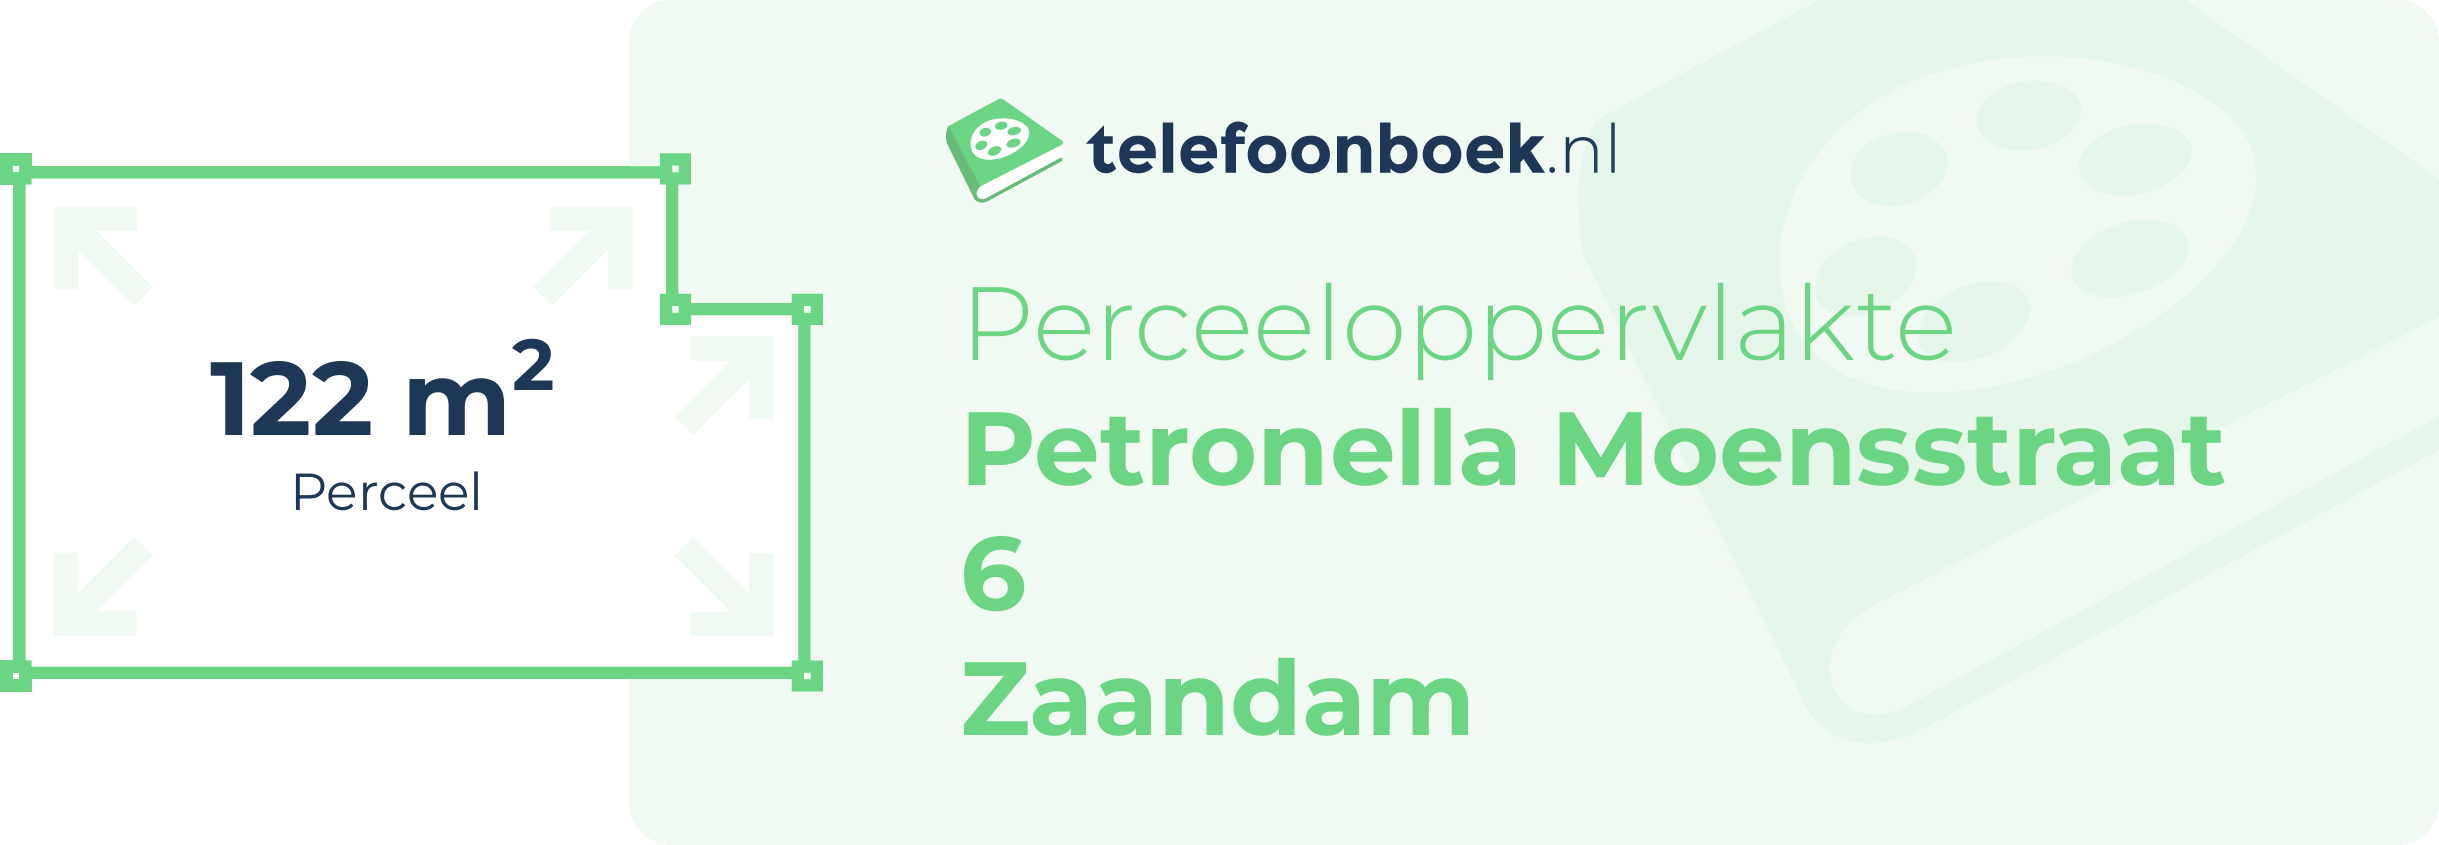 Perceeloppervlakte Petronella Moensstraat 6 Zaandam